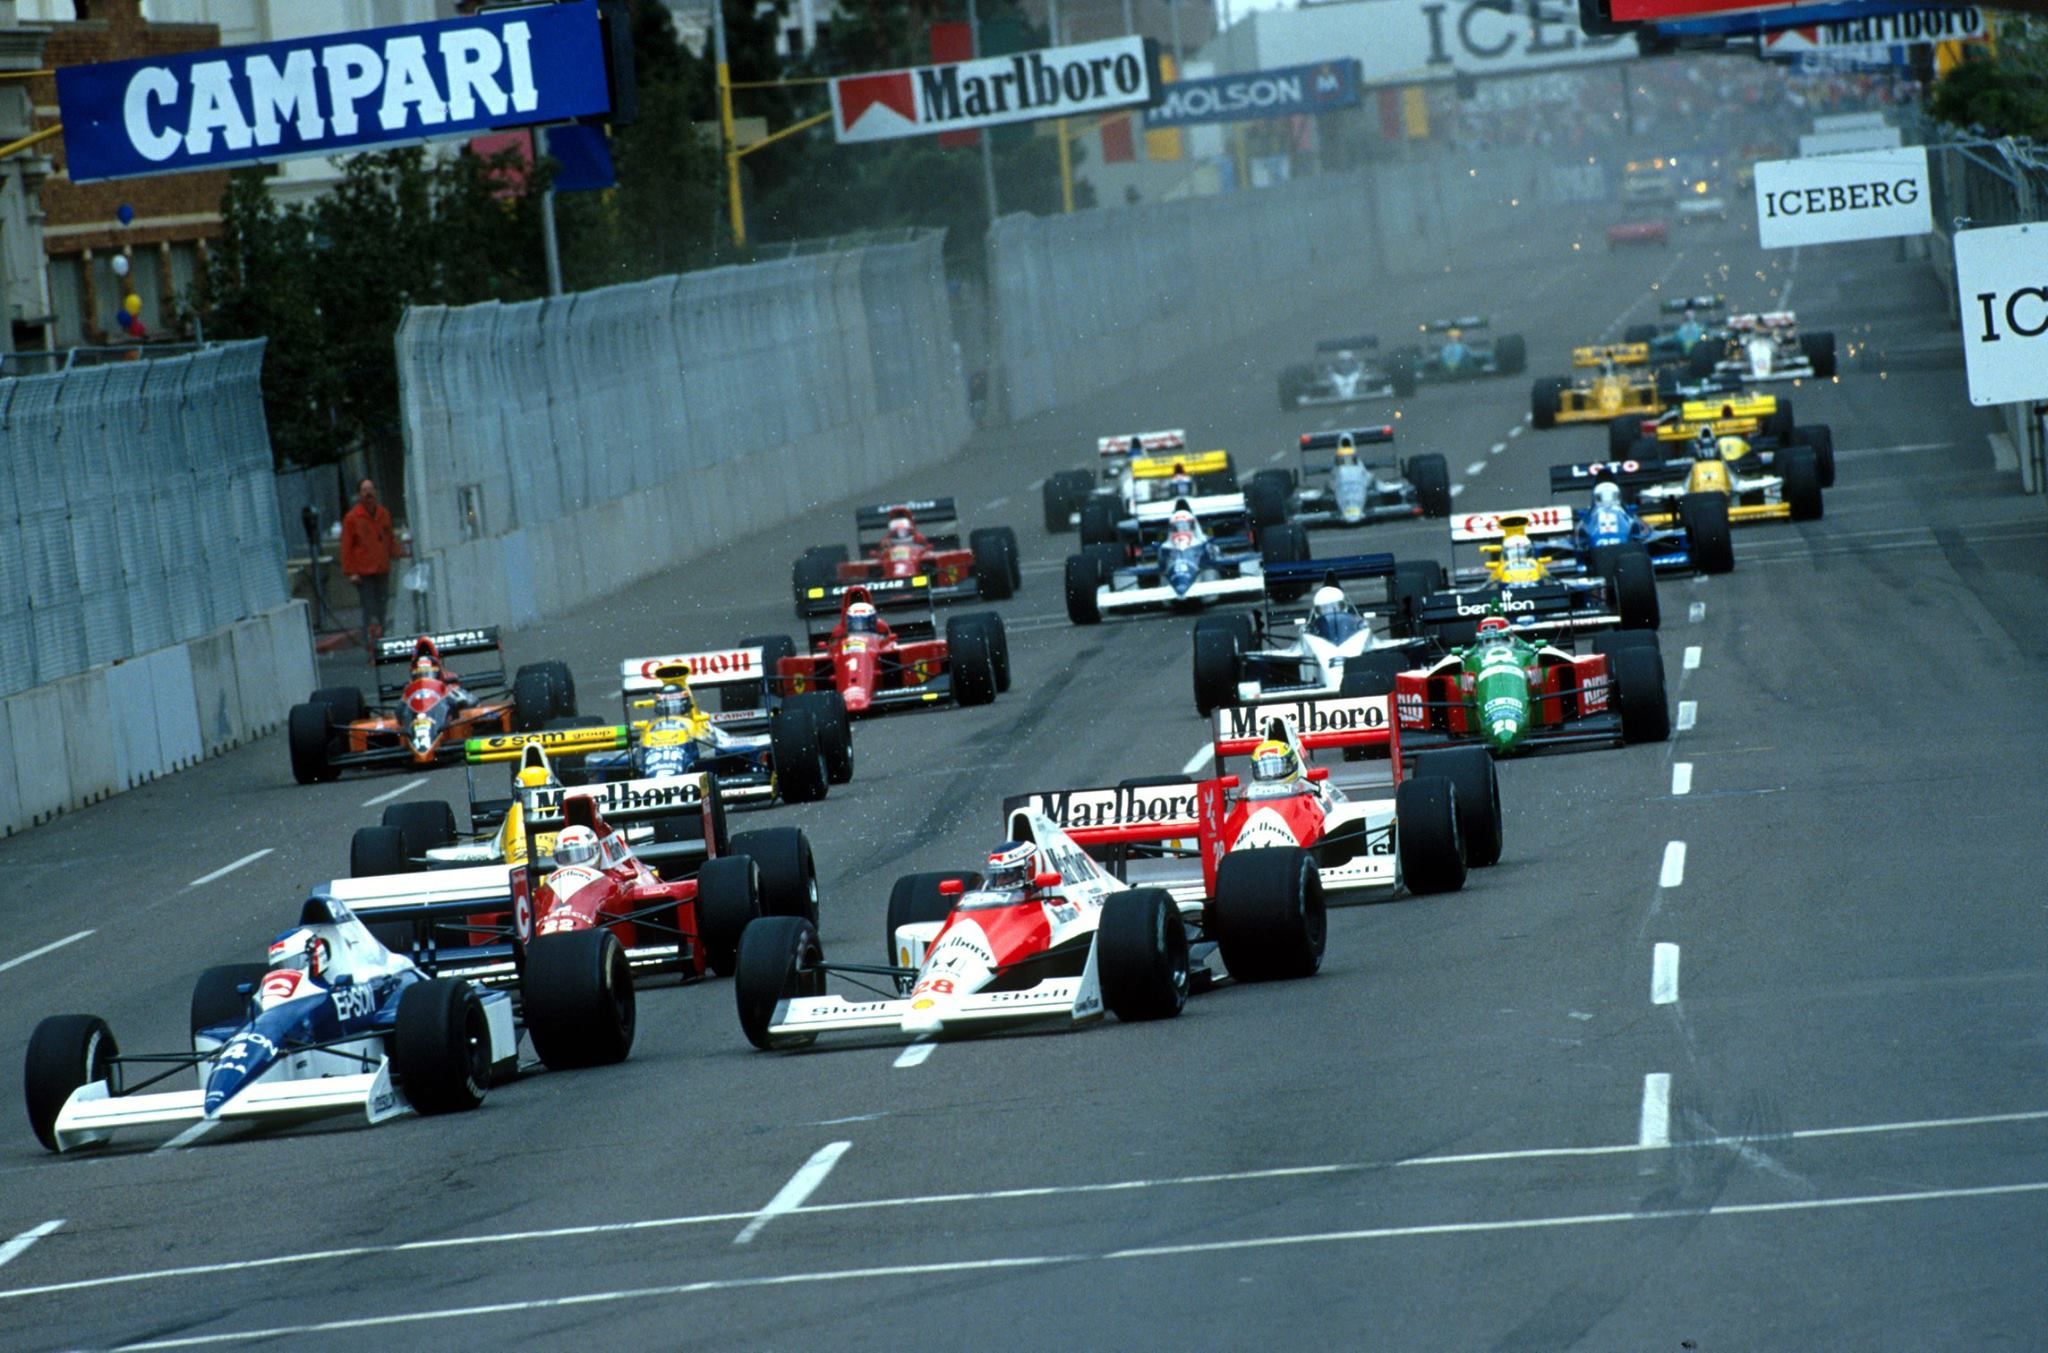 The 1990 F1 Season began with the USA GP.